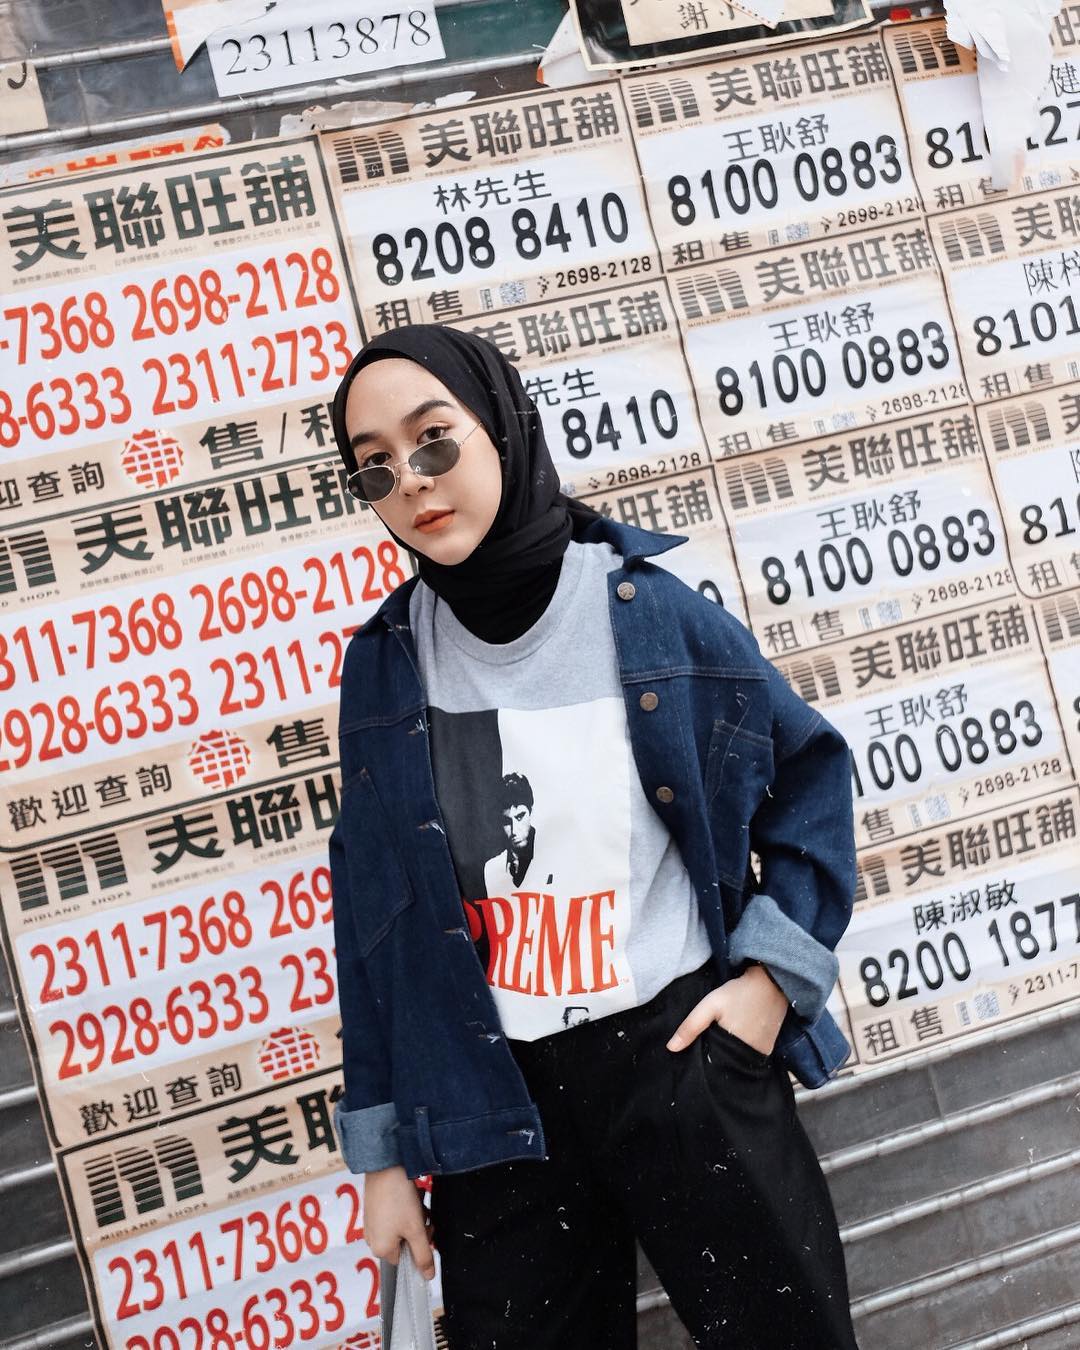 Ootd Hijab Aesthetic Pinterest HijabFest